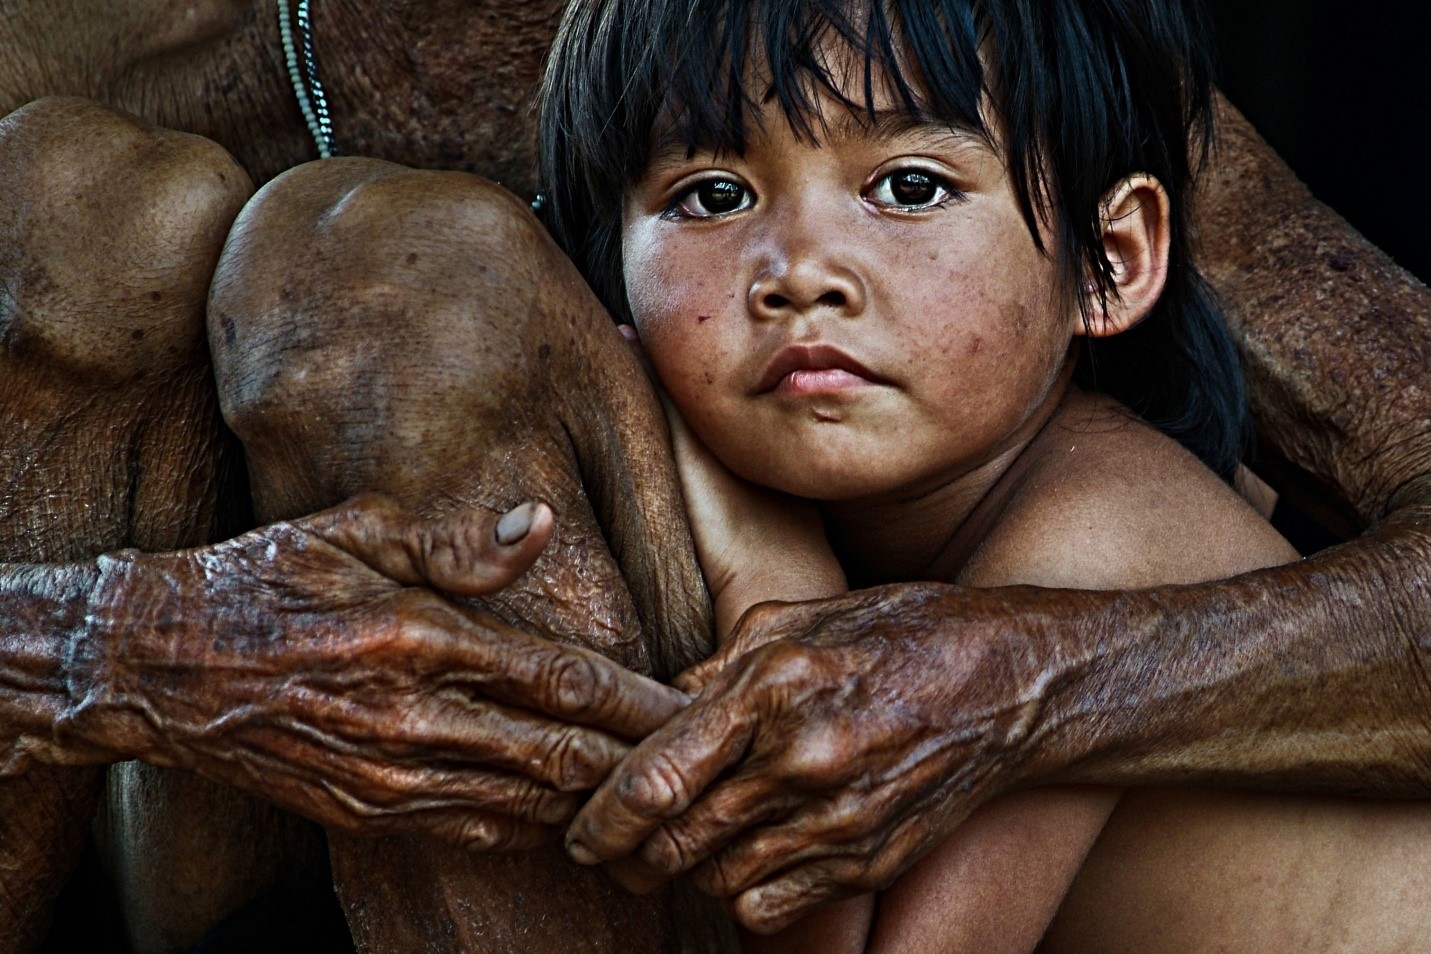 Tác phẩm nhiếp ảnh “A cosy life”- (Ấm cúng) của Hùng Hoa Lư đoạt giải tại cuộc thi ảnh quốc tế